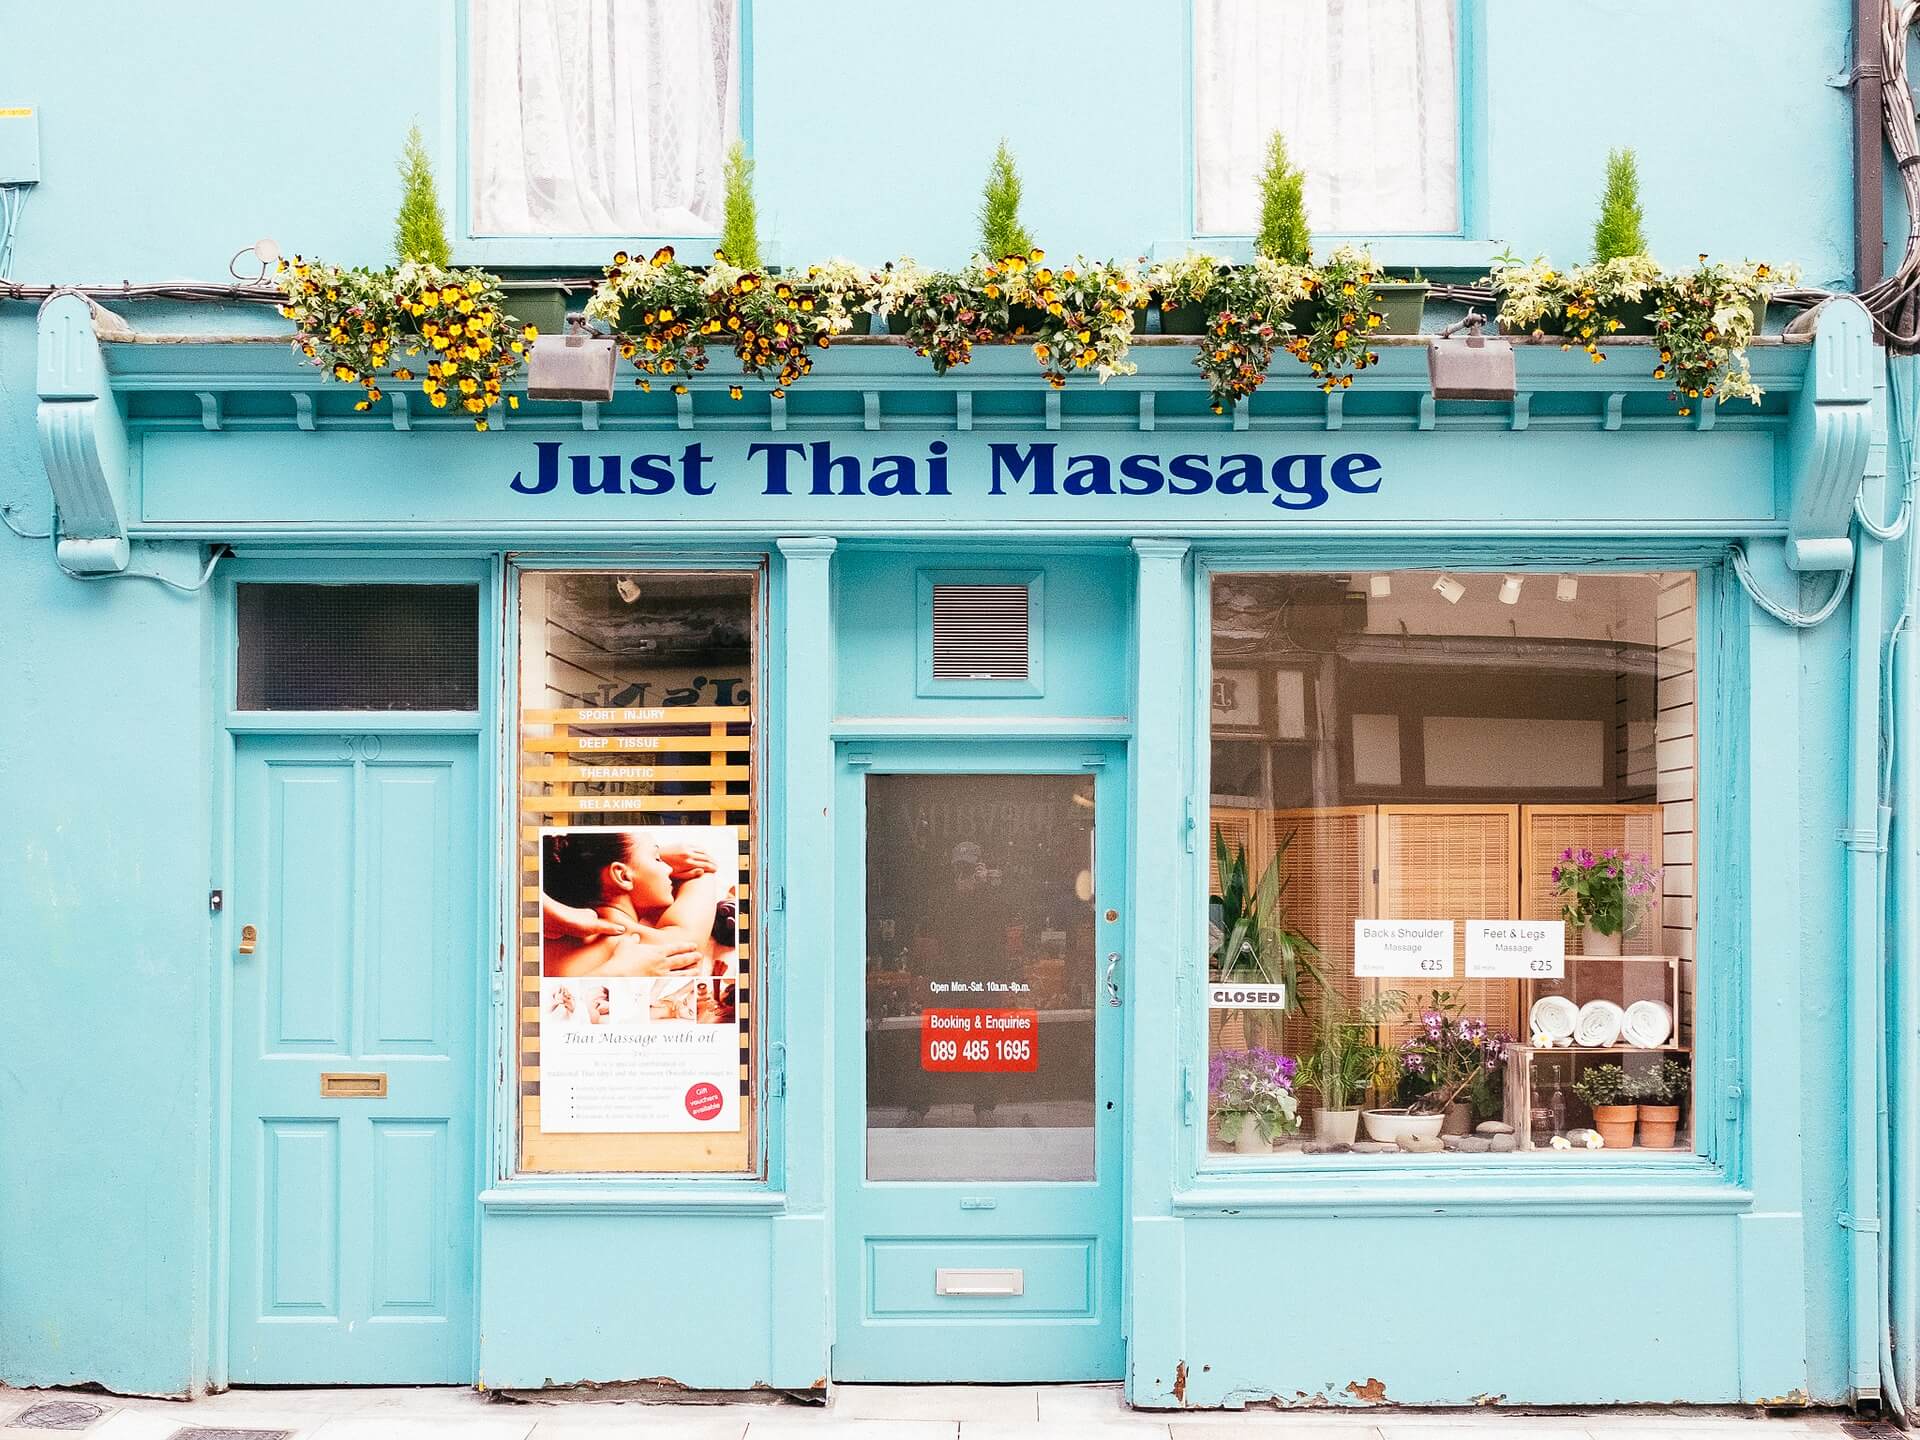 Le massage traditionnel thailandais est un massage habillé, au sol. Il redonne énergie à votre corps.